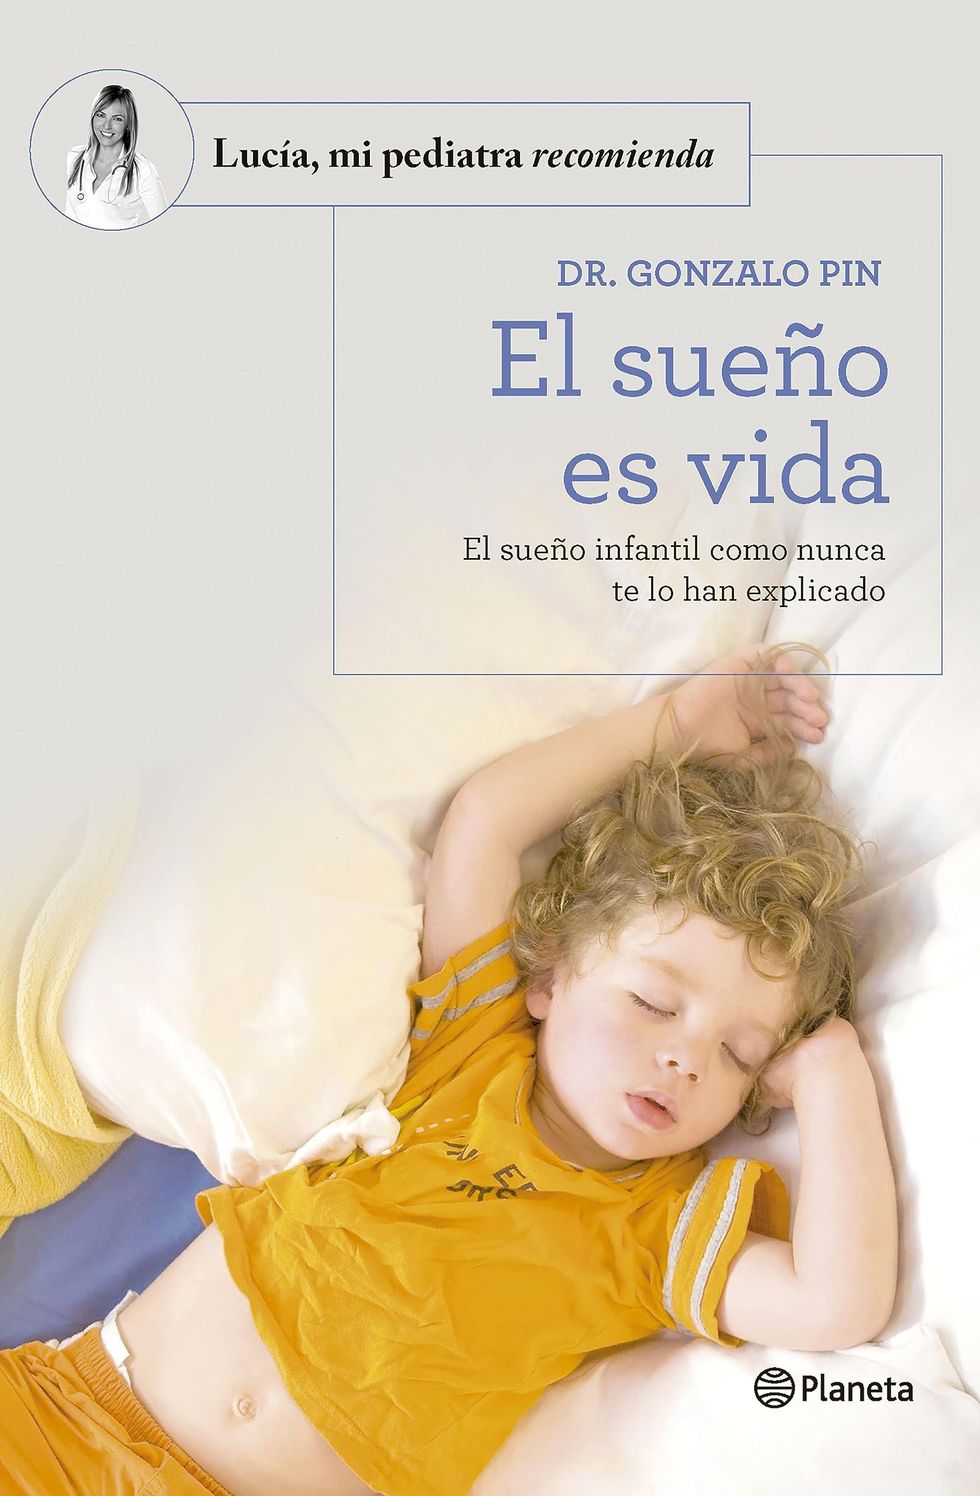 Libros de Lucía mi pediatra. - Lucía mi pediatra